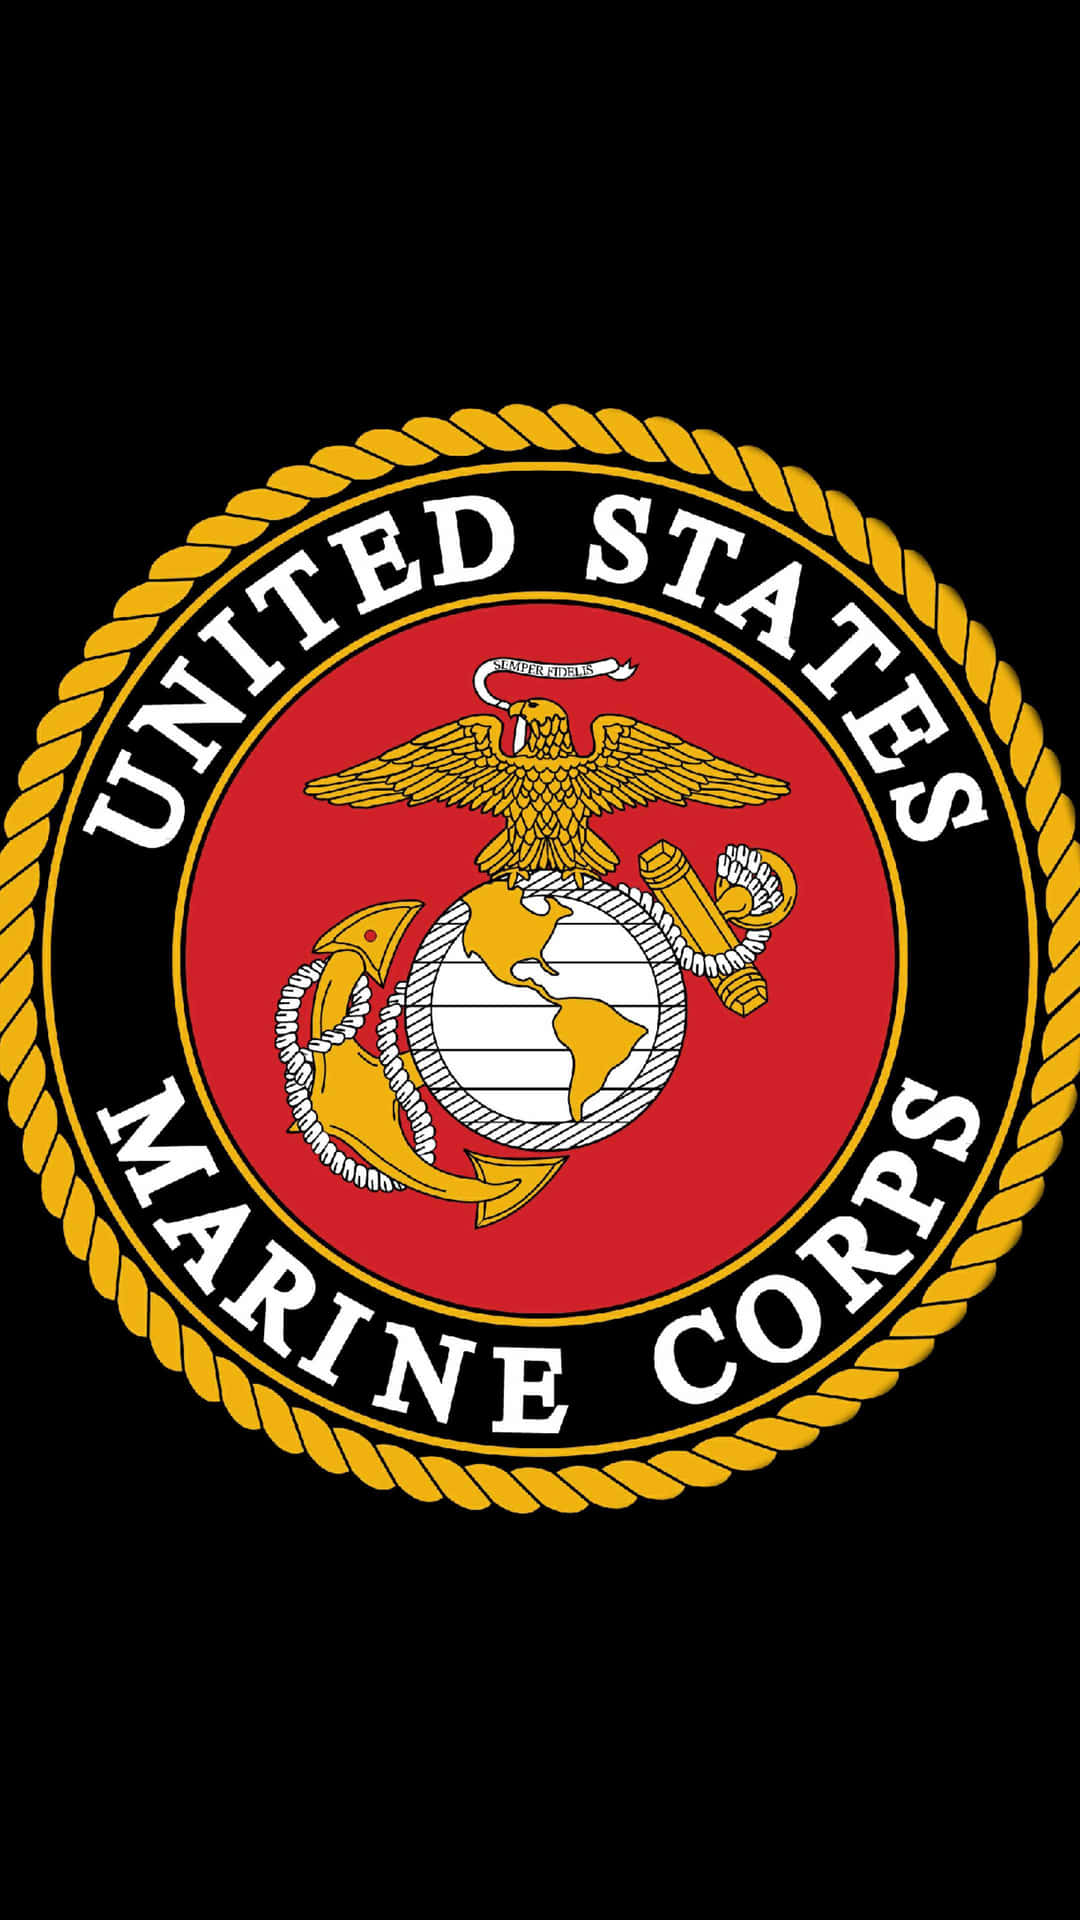 Logodel Cuerpo De Marines De Los Estados Unidos. Fondo de pantalla